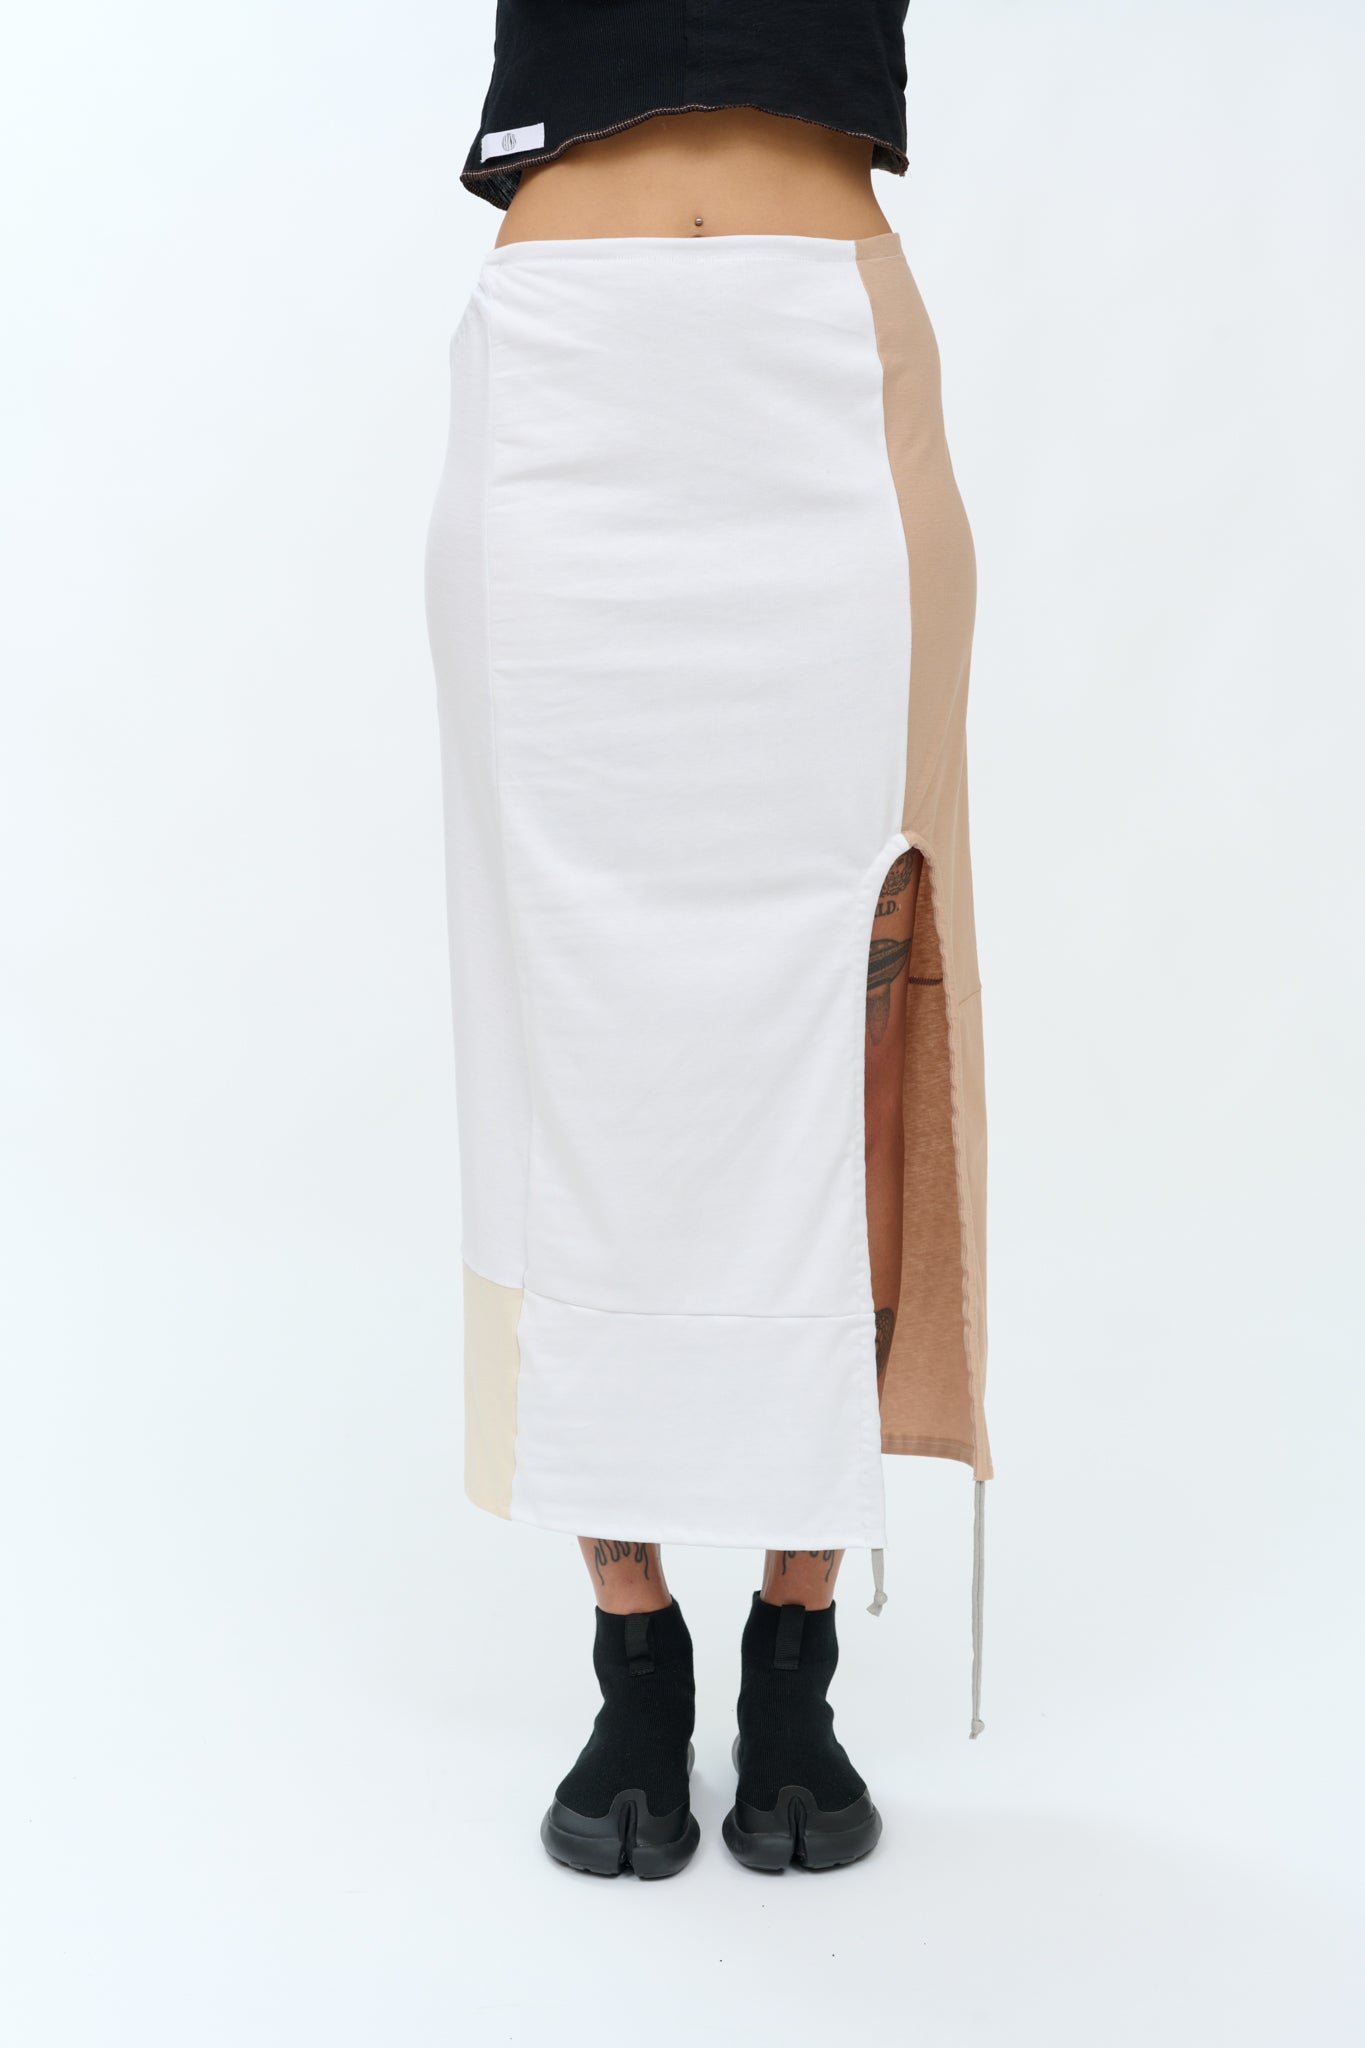 P6 adjustable skirt White